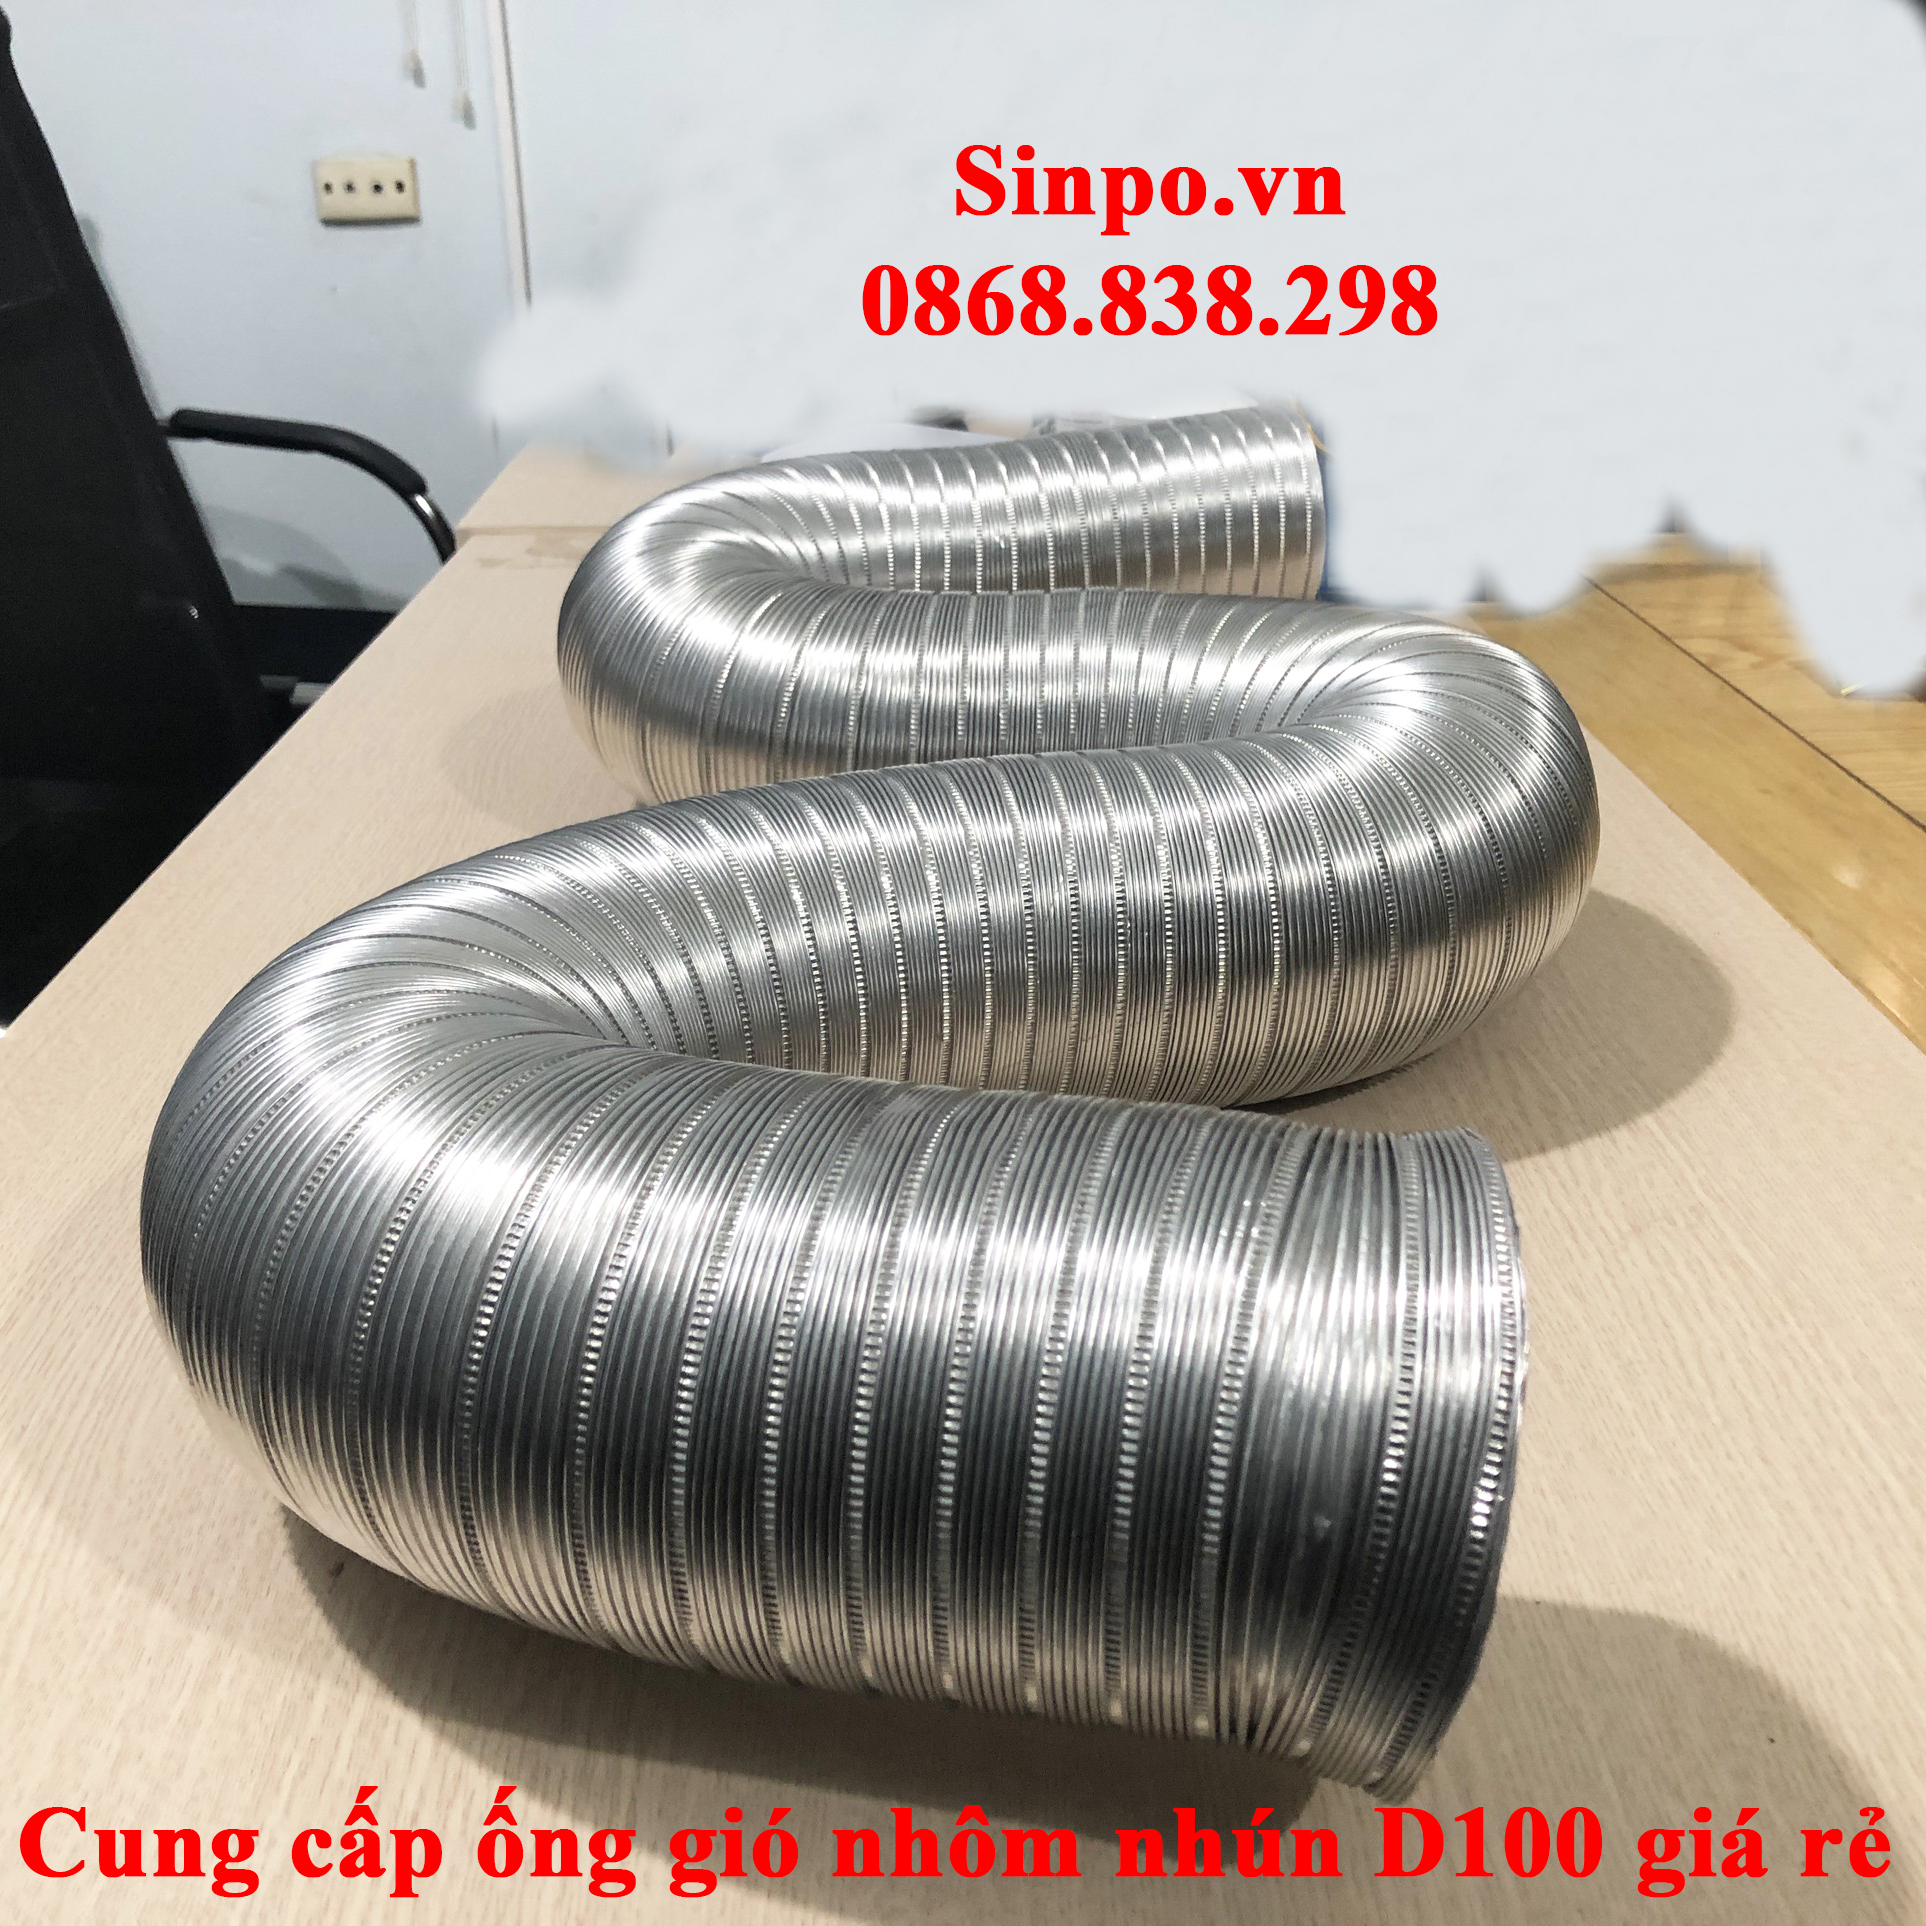 Cung cấp ống gió nhôm nhún D100 mm giá rẻ tại Hà Nội